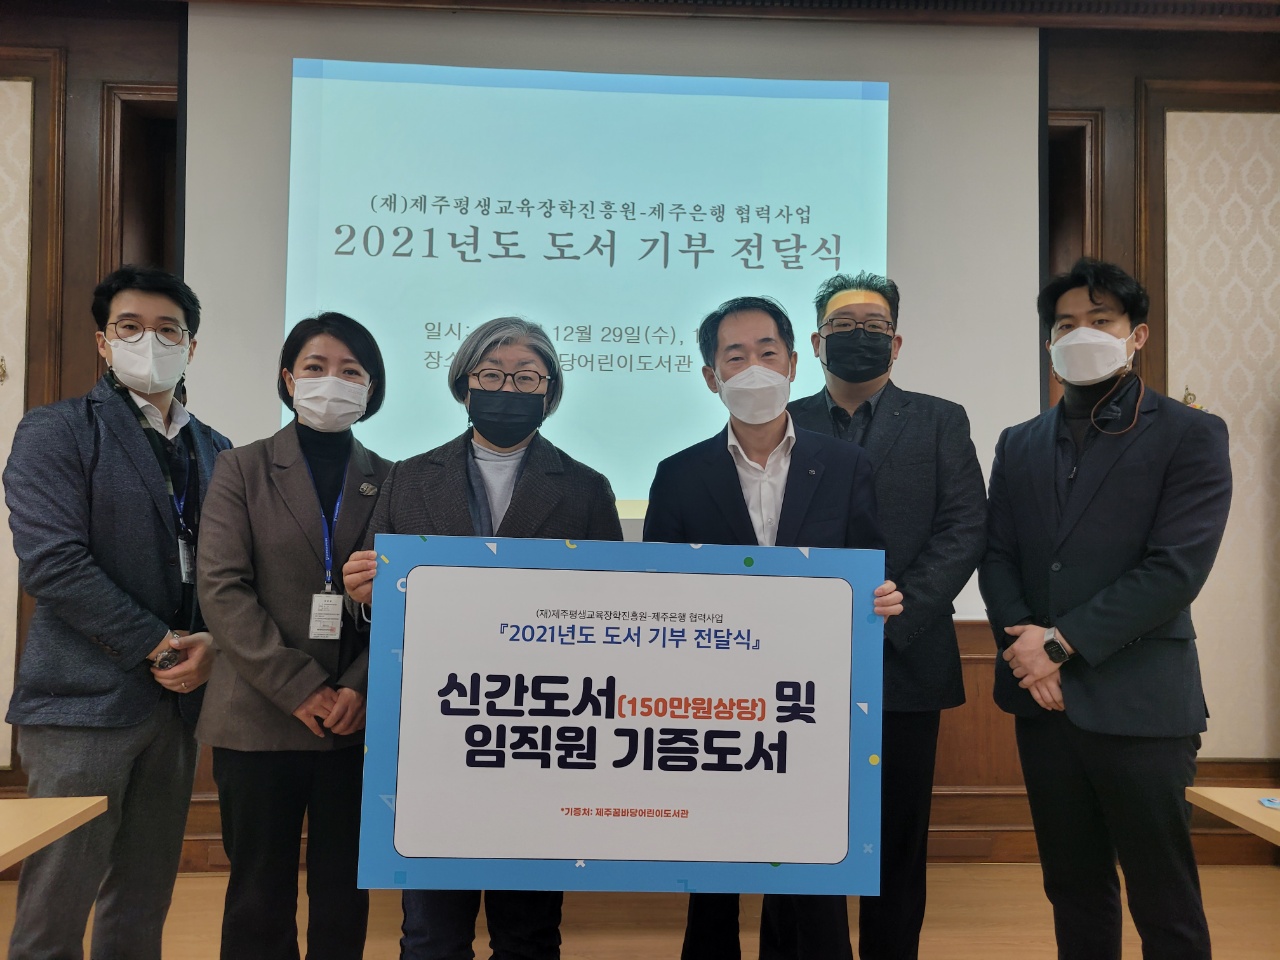 [진흥원-제주은행 협력사업] 2021년도 도서 기부 전달식 개최(2021. 12. 29.) #2